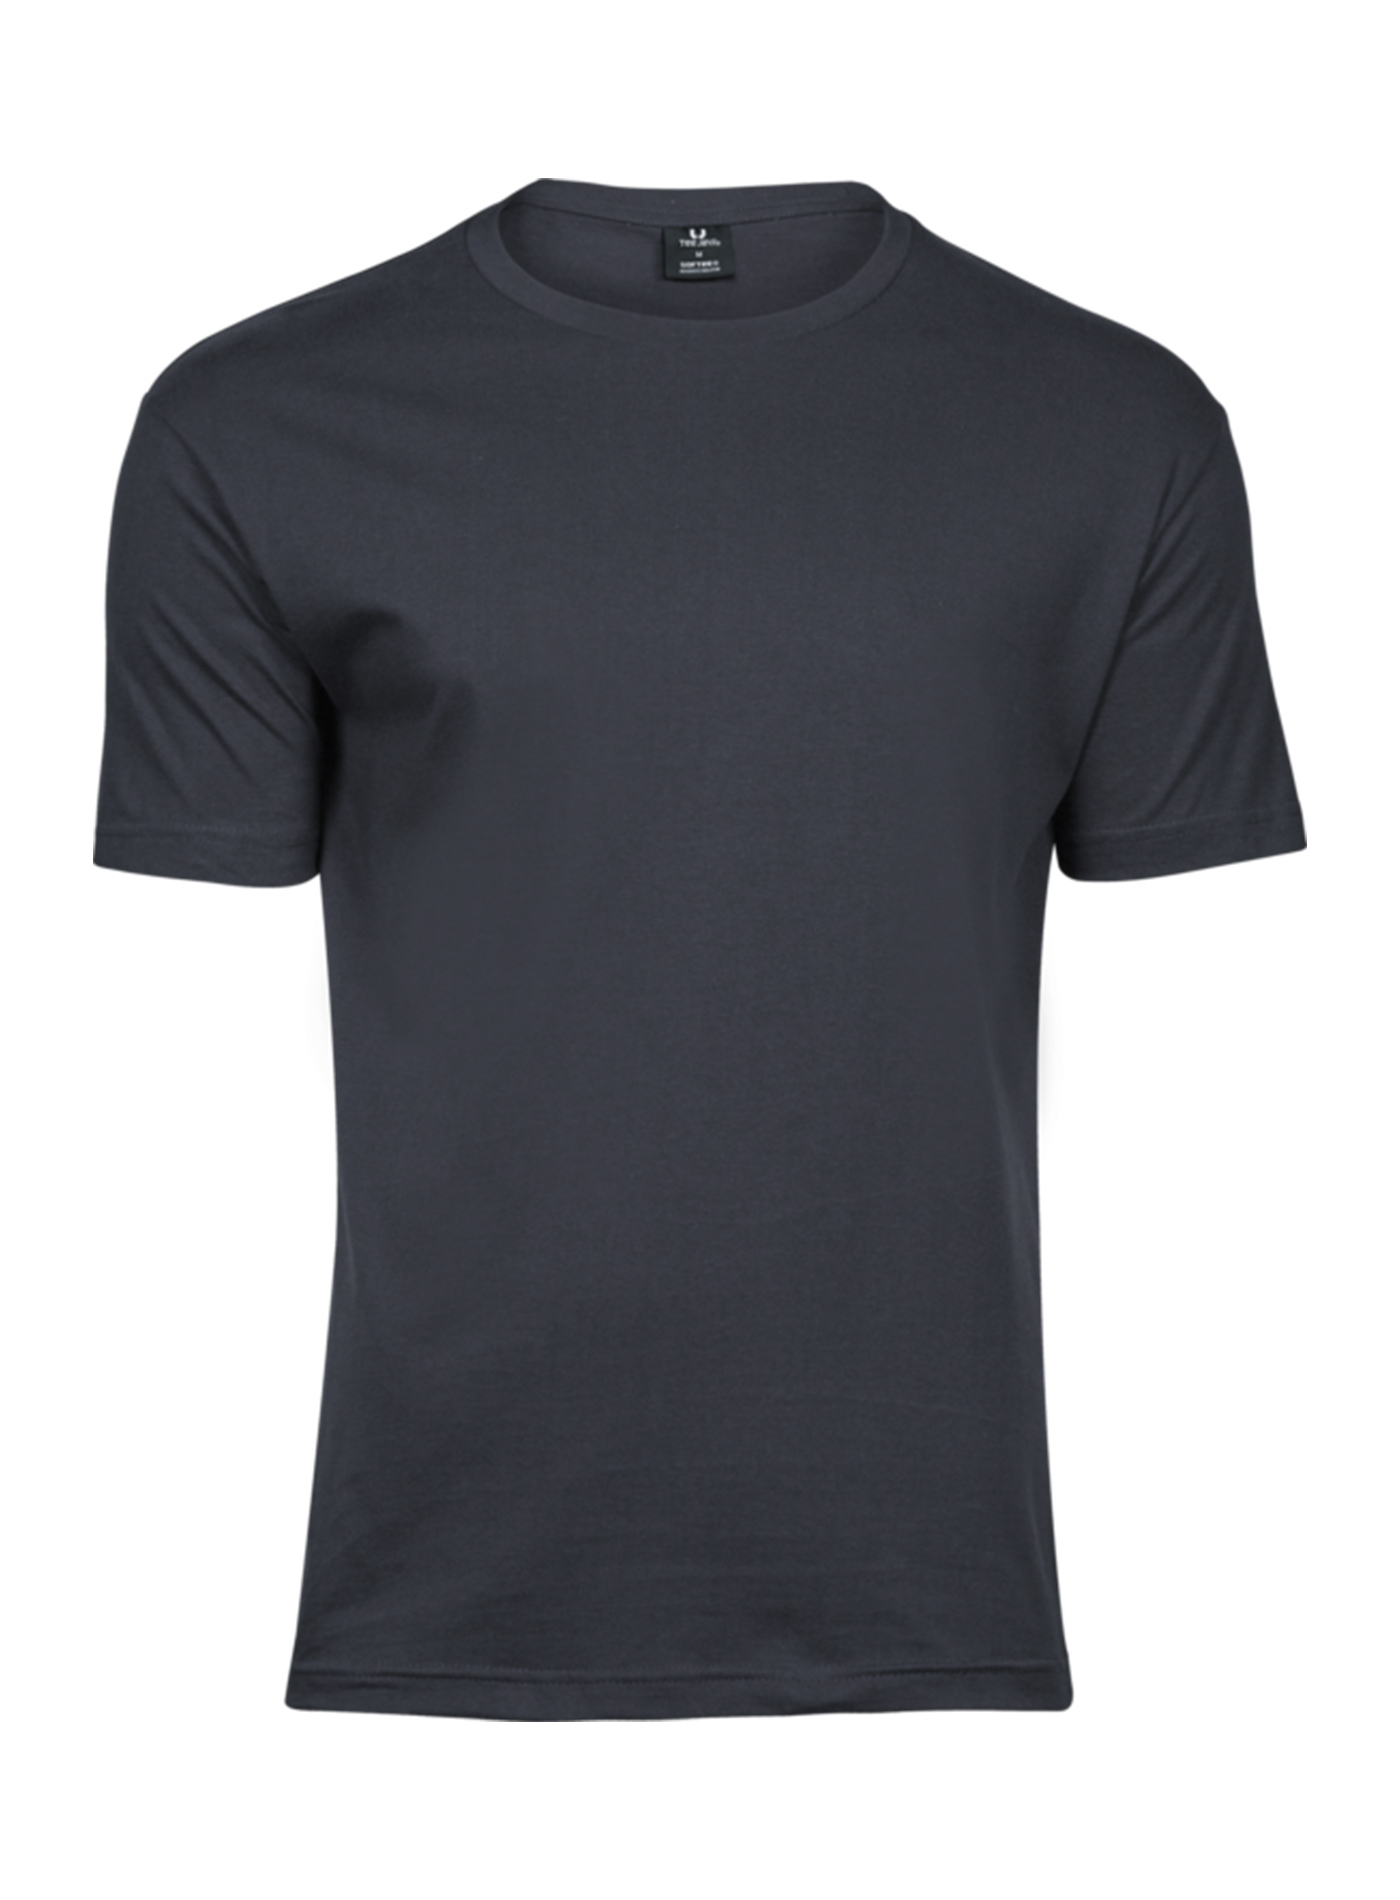 Pánské tričko Fashion Tee Jays - Tmavě šedá M